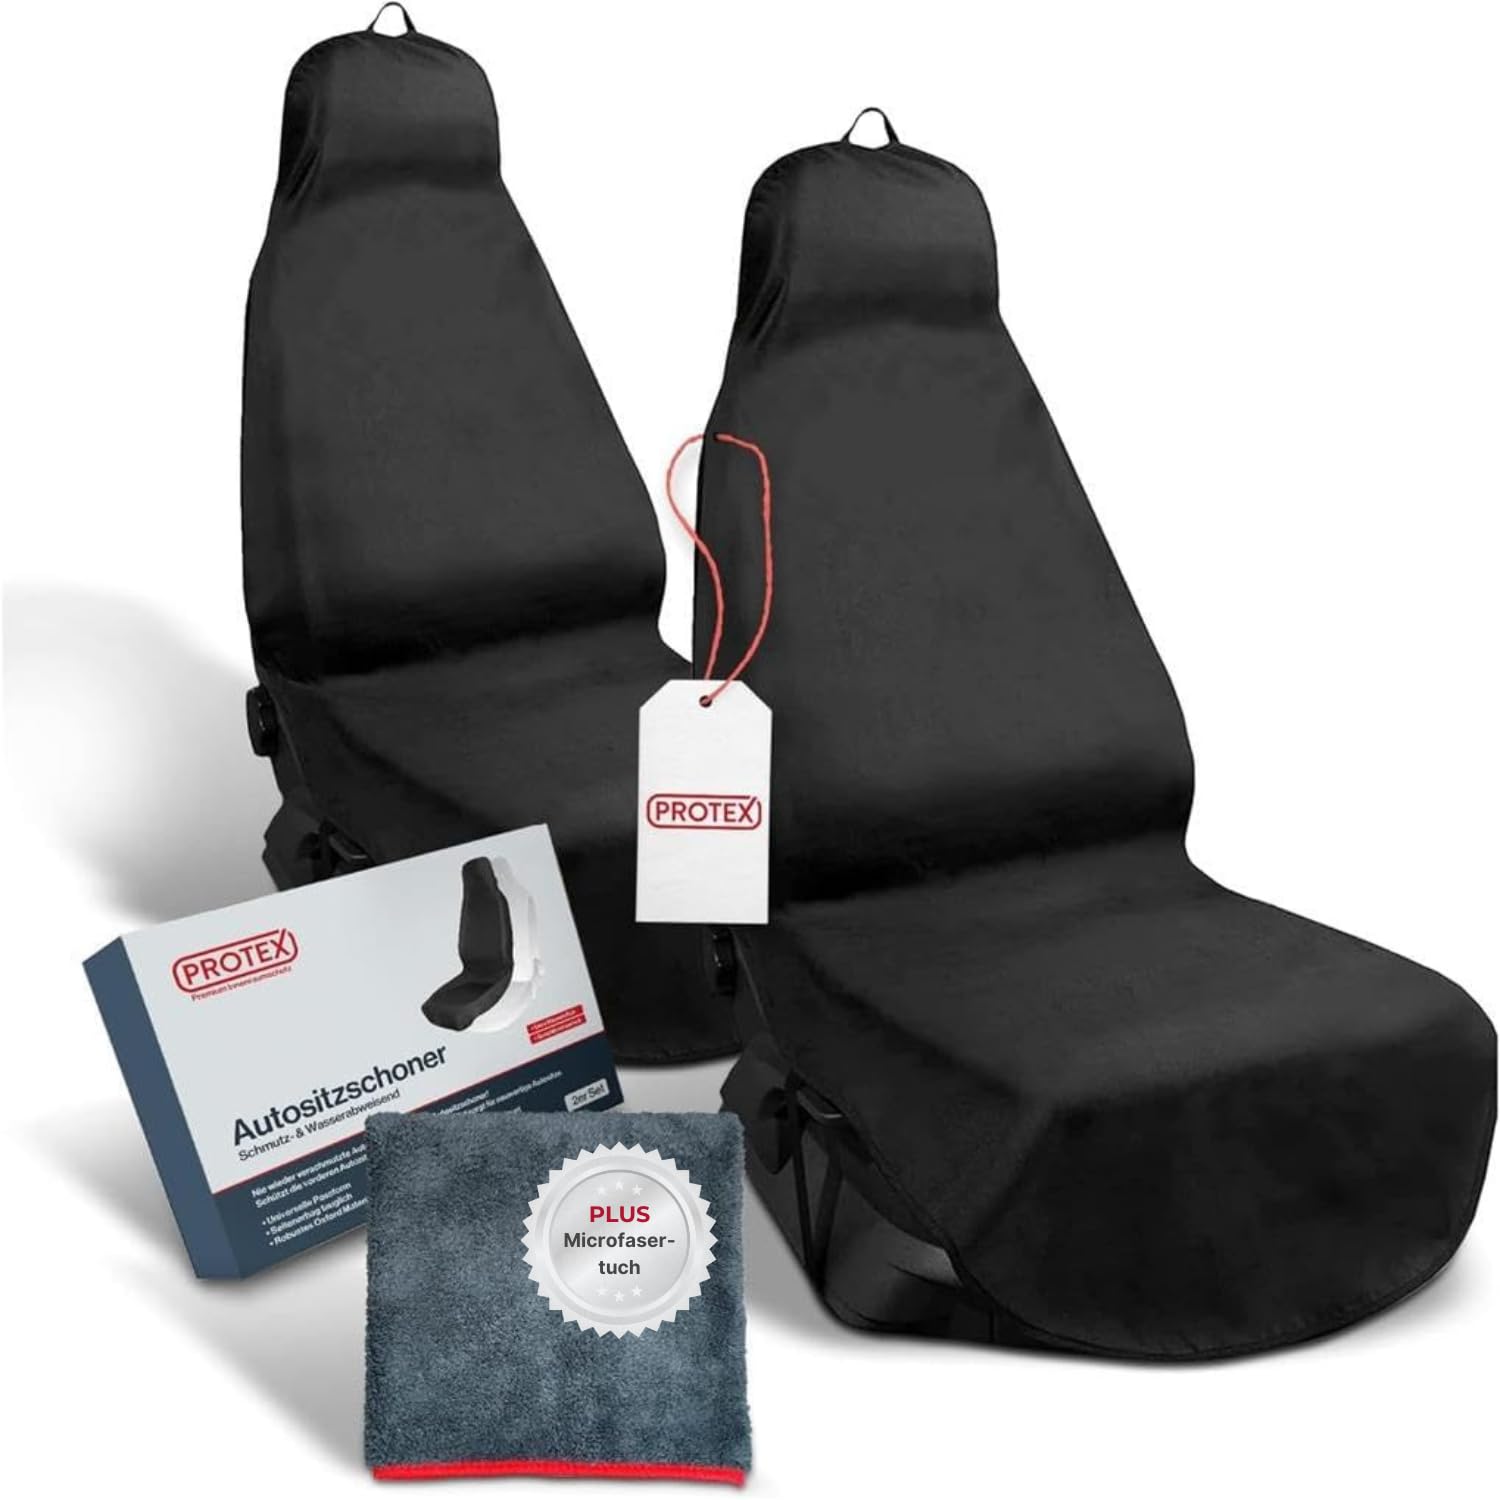 PROTEX Sitzschoner für Autositze - Werkstattschoner - Rutsch- und wasserfestes, schmutzabweisendes Oxford-Material - Ideale Passform - schwarz (2 Stück) von PROTEX